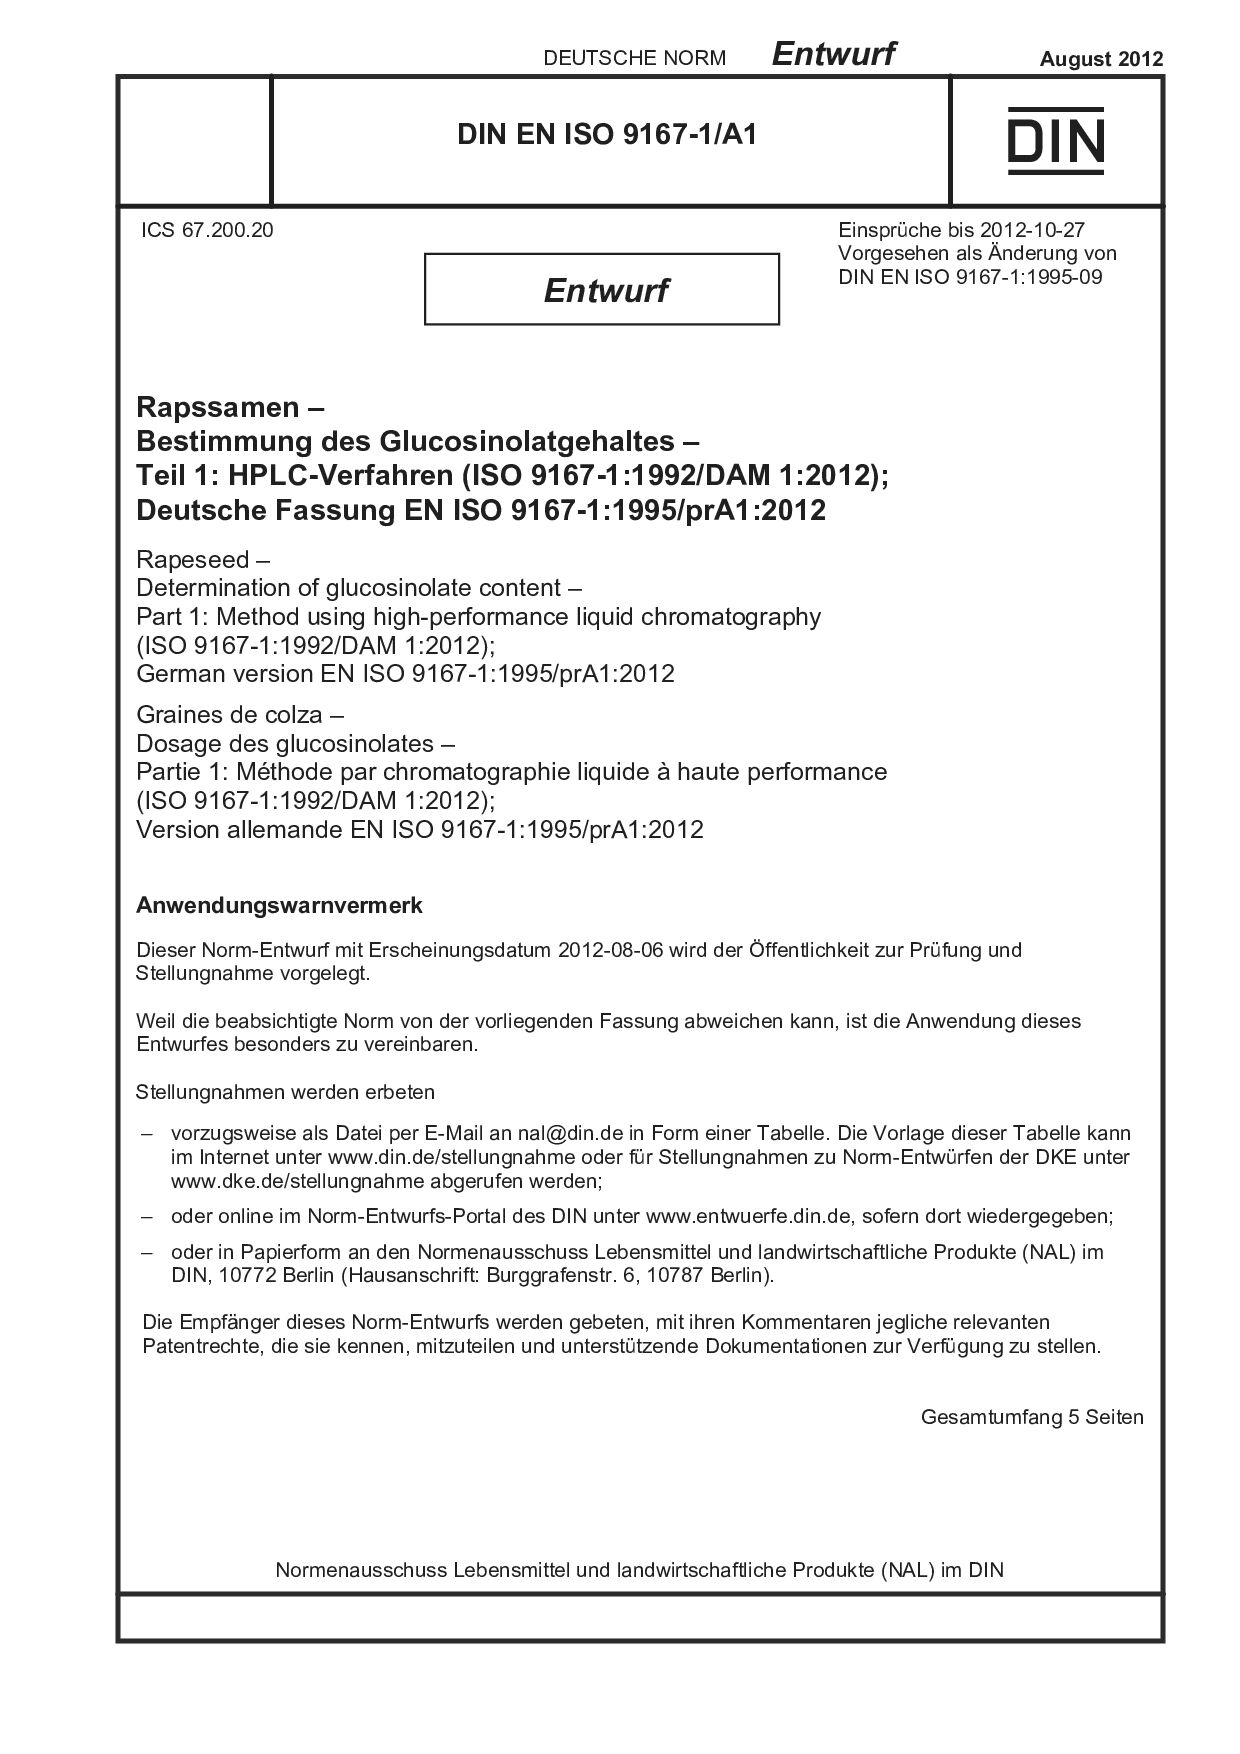 DIN EN ISO 9167-1 A1 E:2012-08